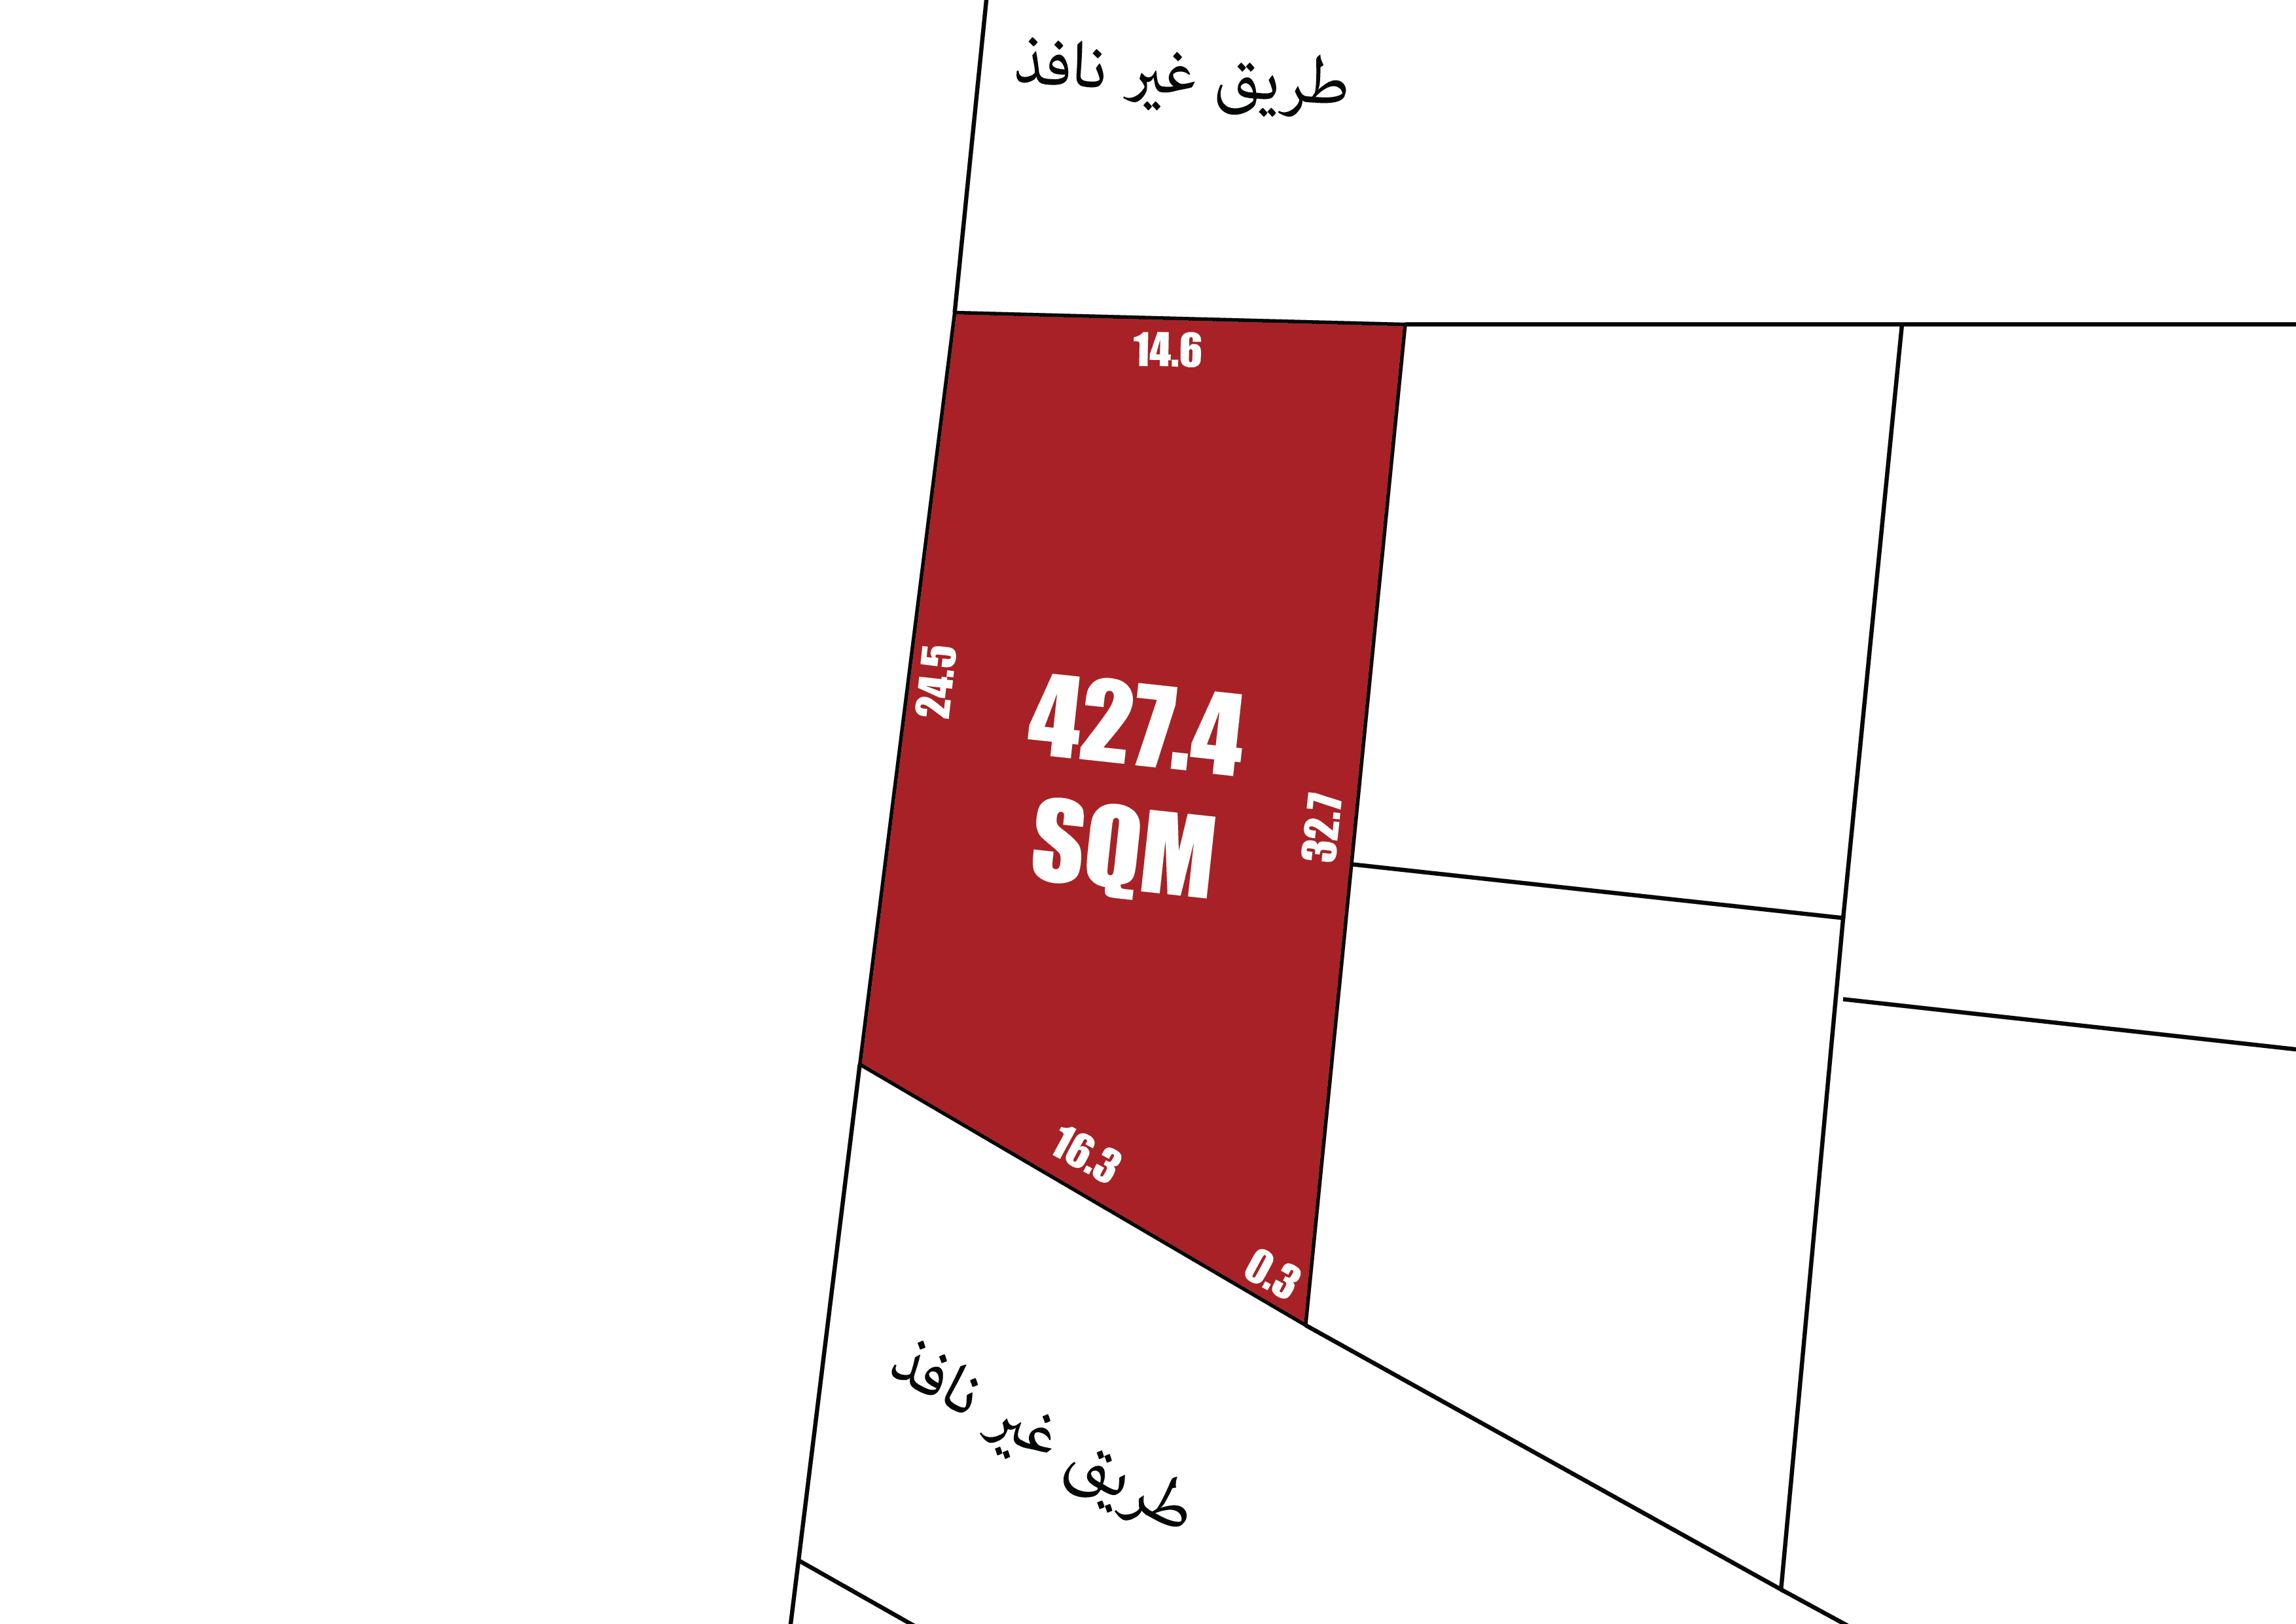 رسم تخطيطي يوضح قطعة أرض مساحتها 427.4 مترًا مربعًا مظللة باللون الأحمر مع الإشارة إلى أحجام قطع الأرض المجاورة.